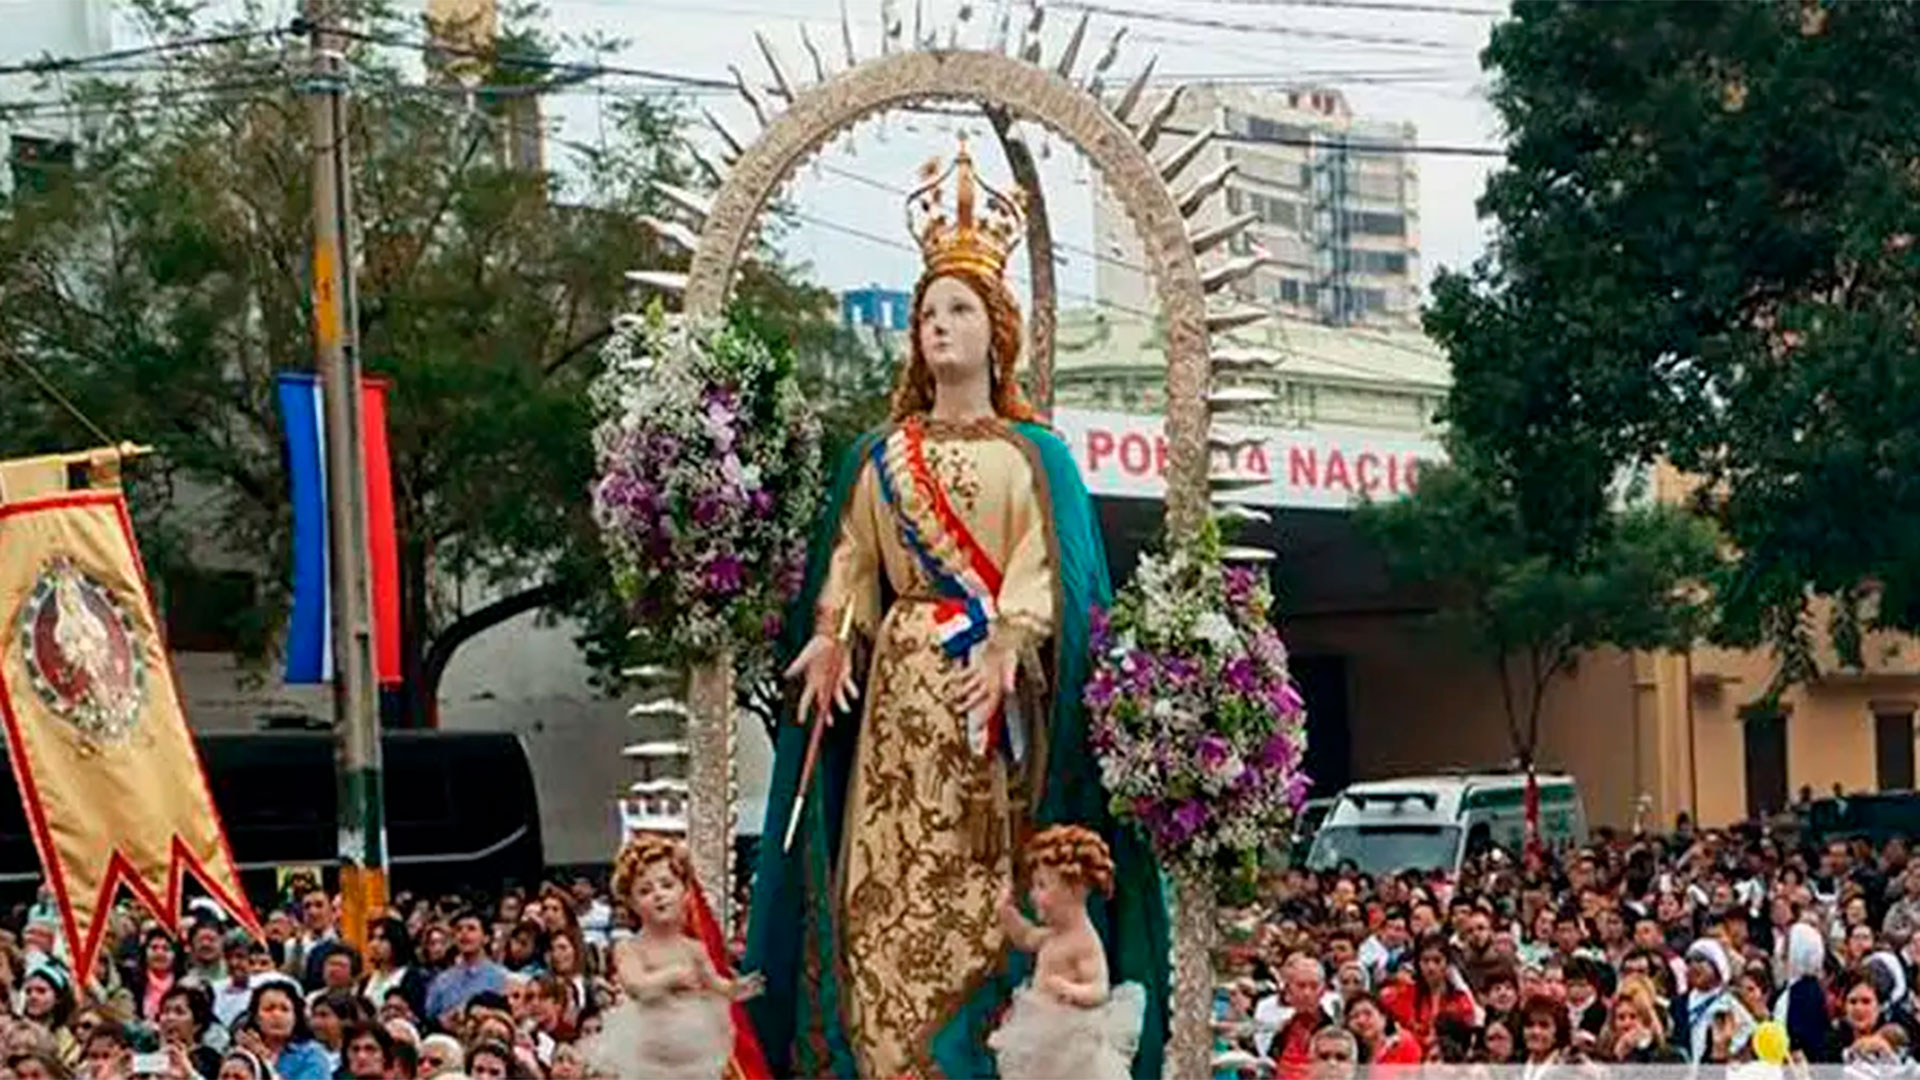 La celebración de la Asunción de la Virgen María en Asunción del Paraguay, ciudad fundada el 15 de agosto de 1537, que lleva ese nombre en honor de ese dogma